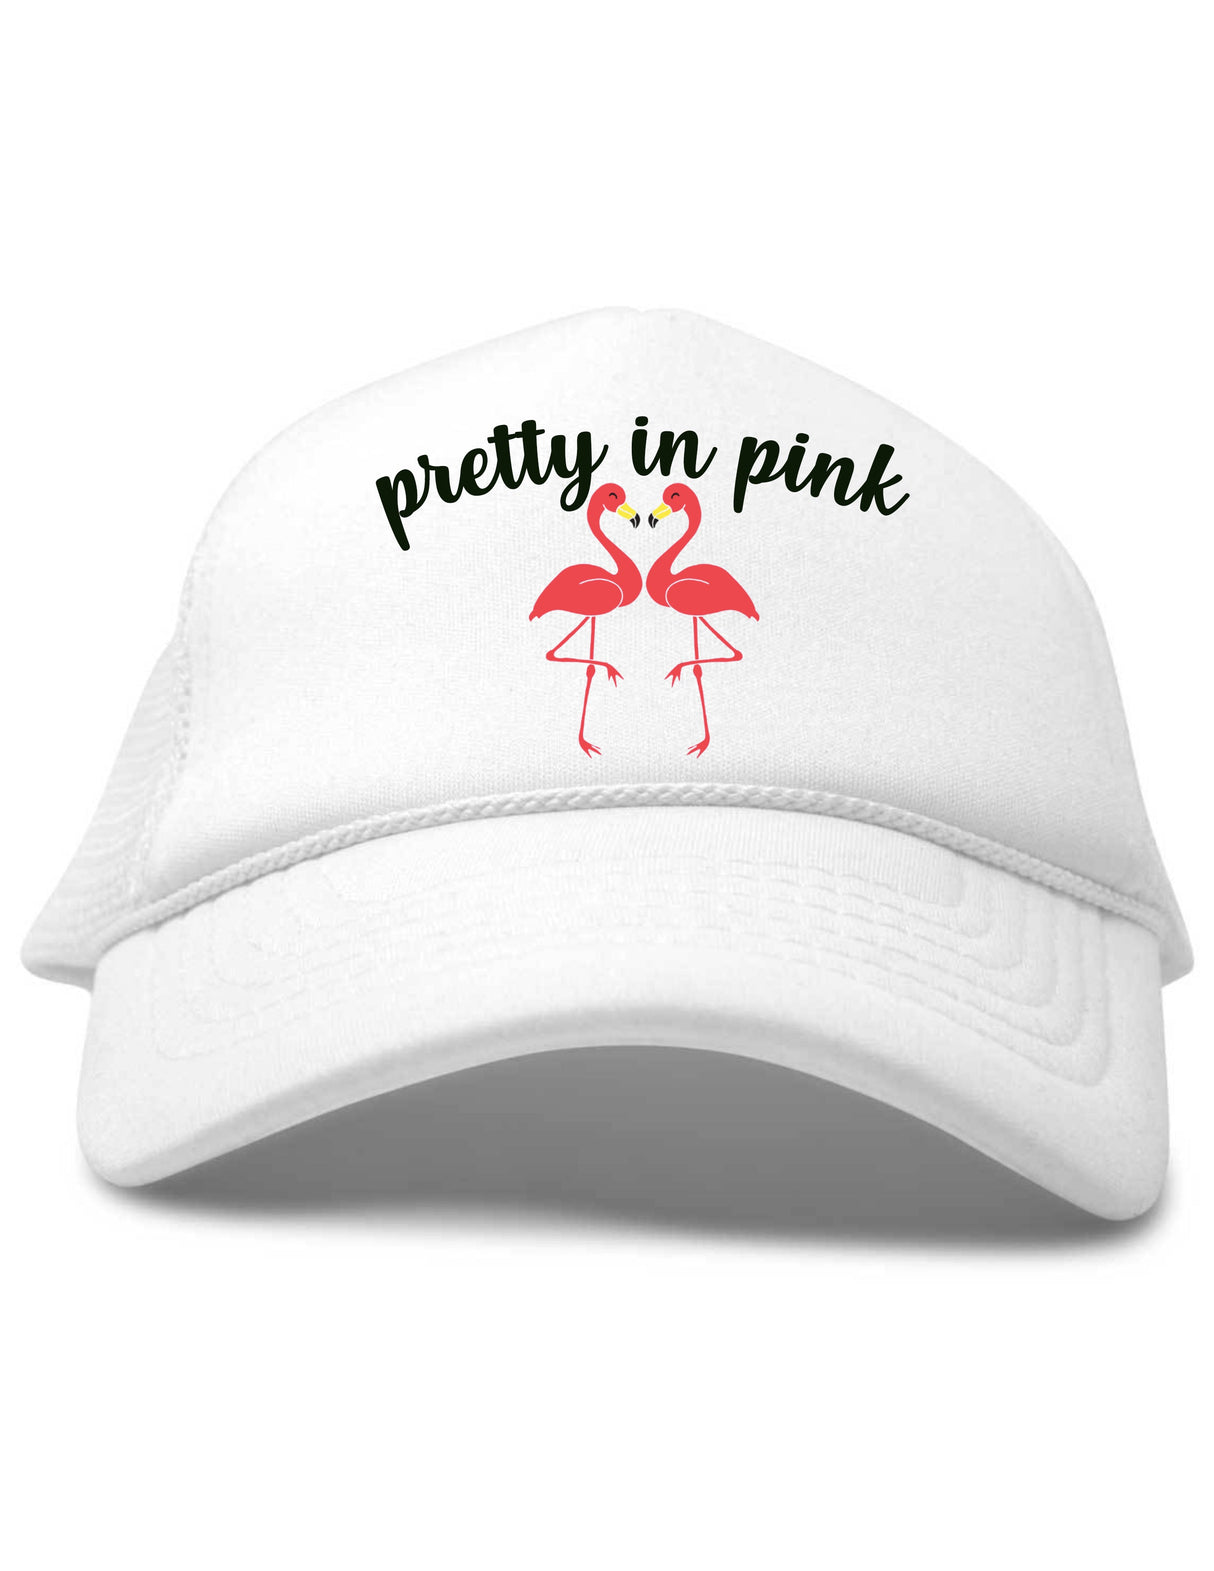 Pretty In Pink Flamingos Trucker Hat by Beau & Belle Littles